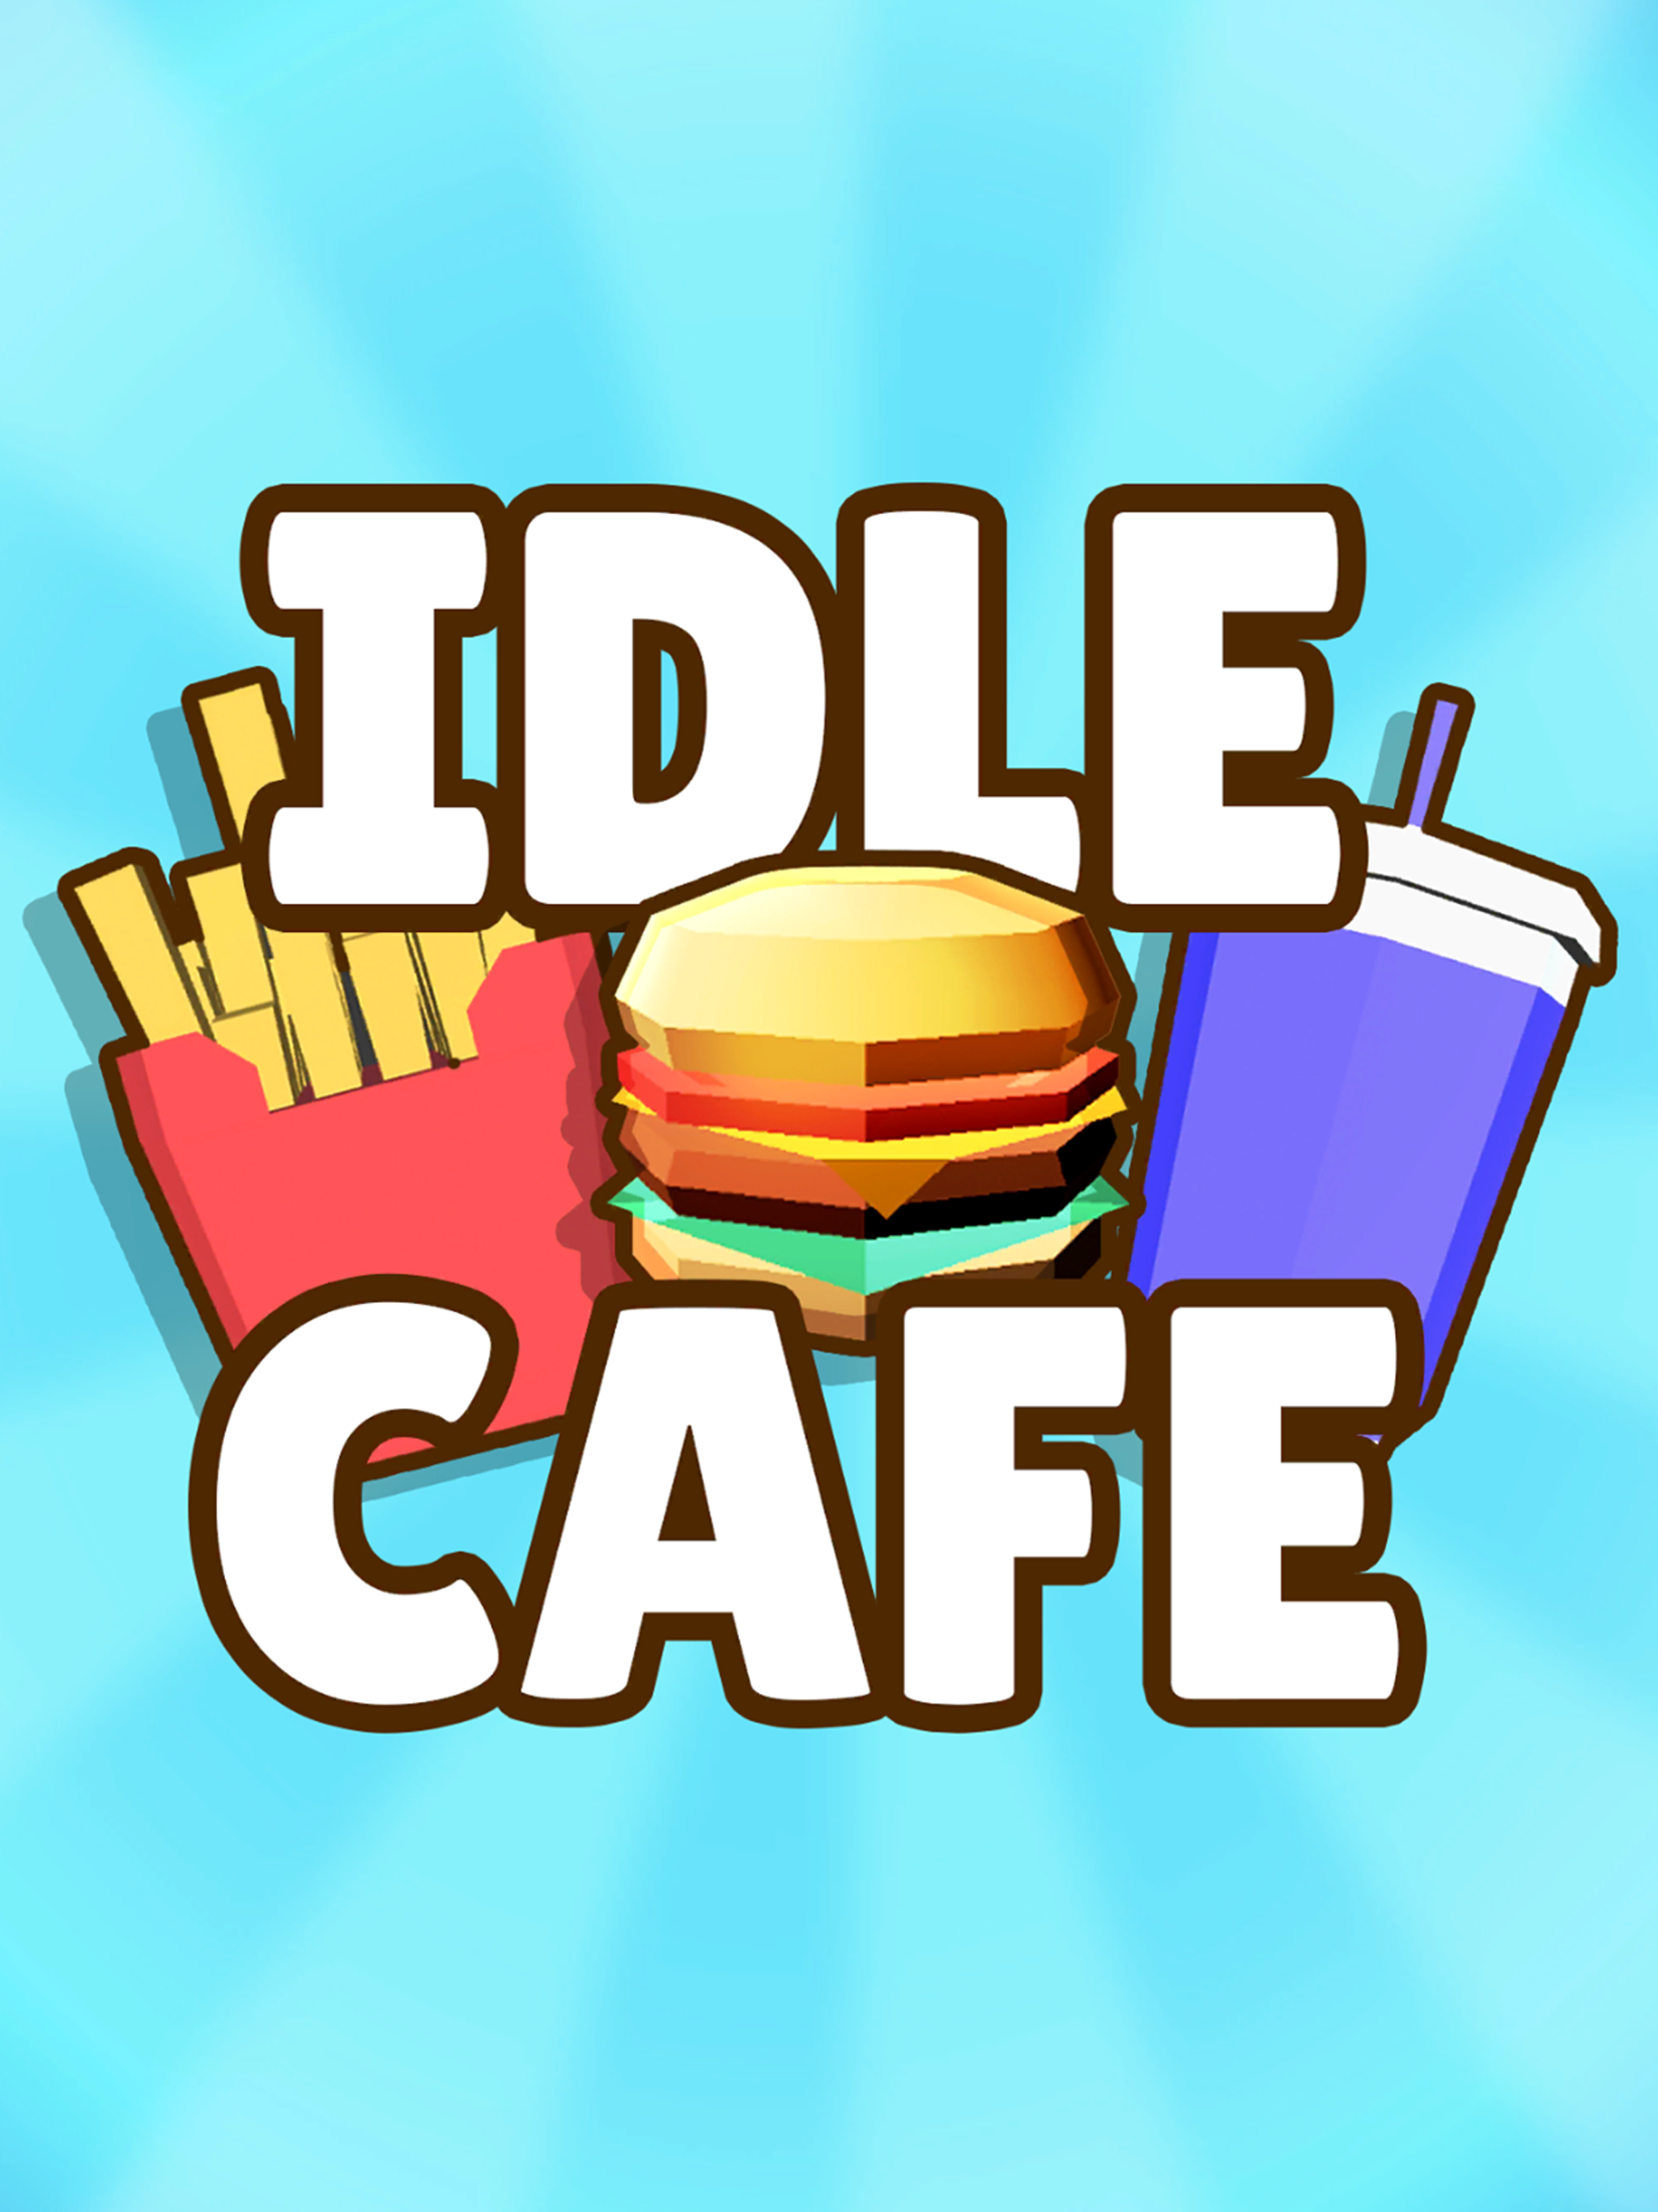 Idle Cafe! タップタイクーンのキャプチャ